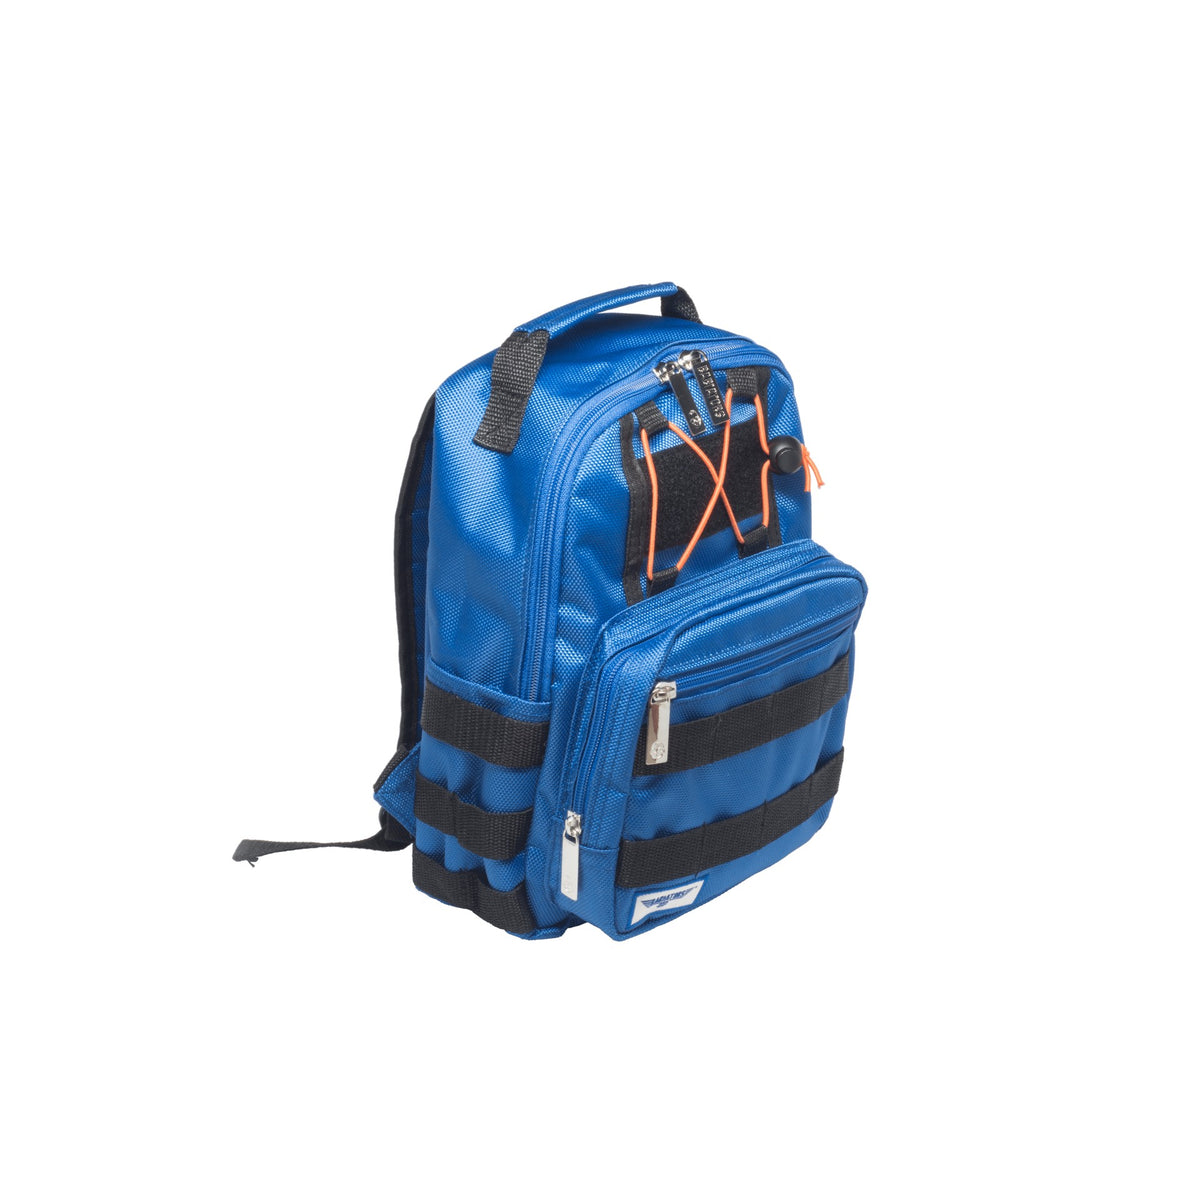 Rocket Pack Backpack - Blue Angels Blue